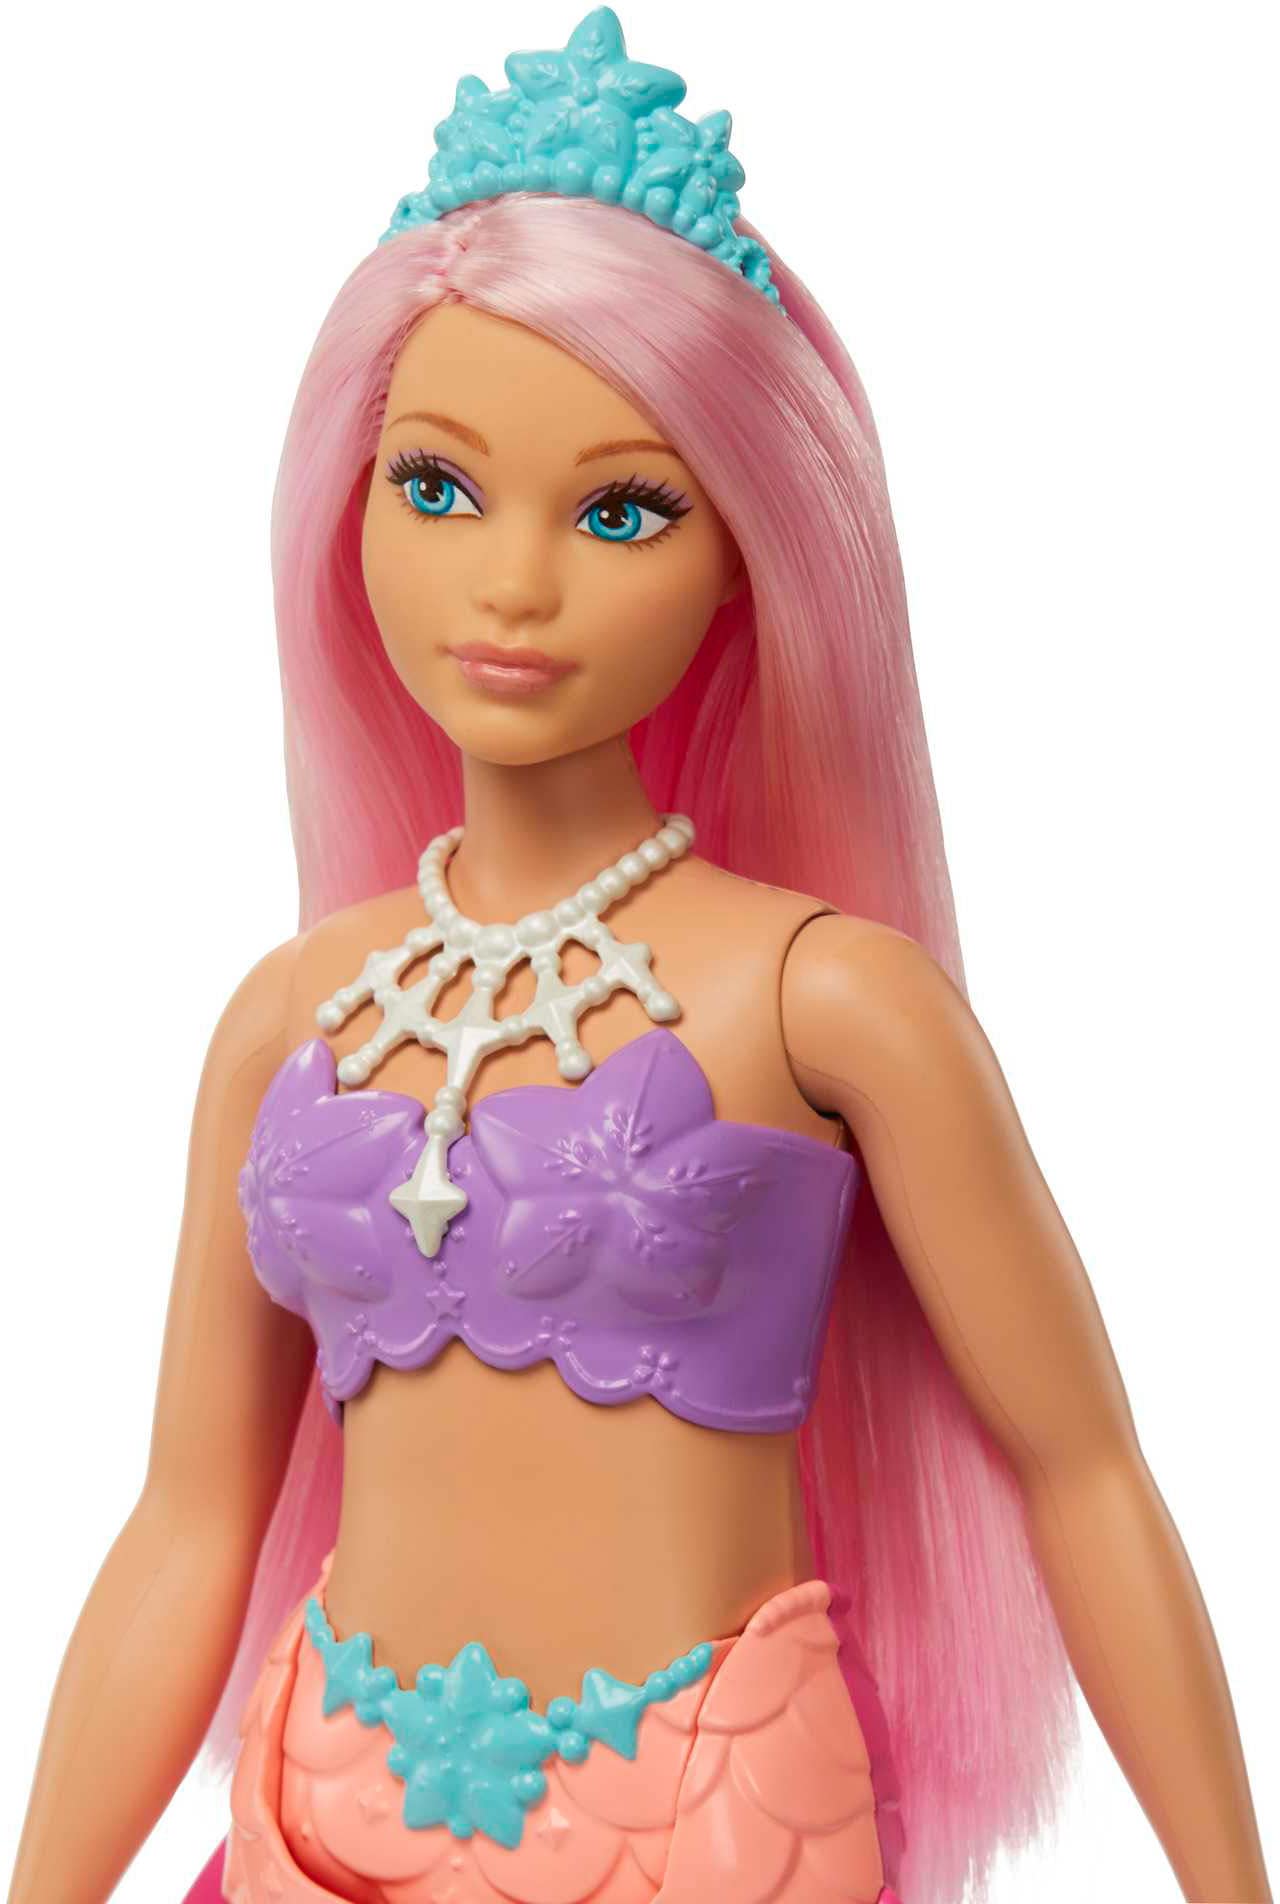 Barbie Meerjungfrauenpuppe kaufen »Dreamtopia Meerjungfrau-Puppe« online